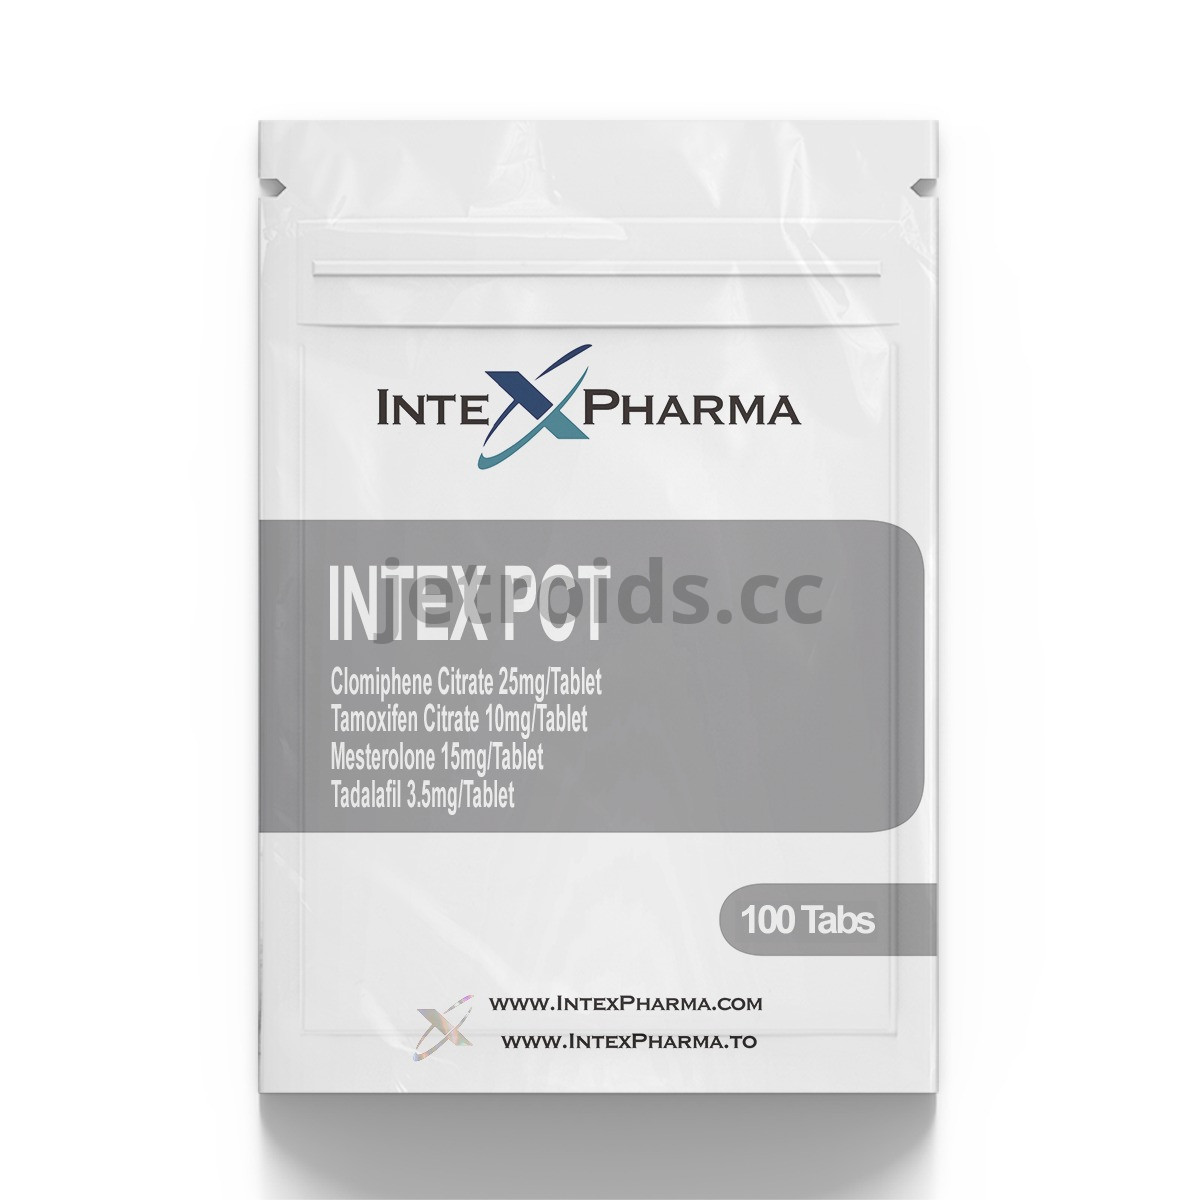 IntexPharma Intex PCT Product Info